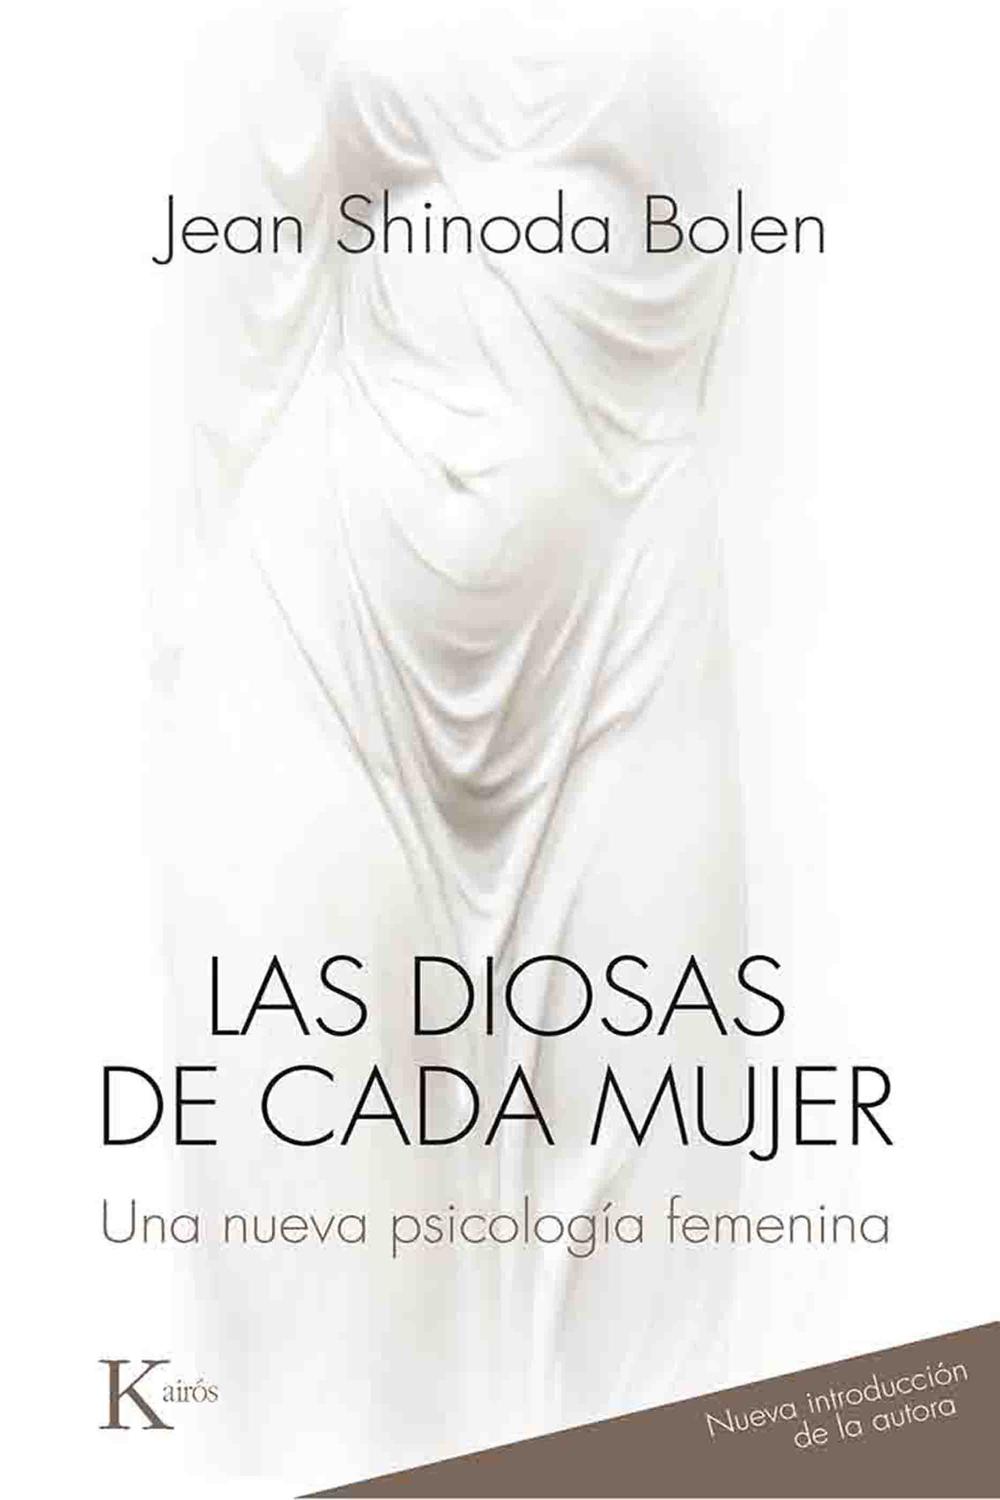 La oficina brazo Sumergido PDF] Las diosas de cada mujer by Jean Shinoda Bolen eBook | Perlego